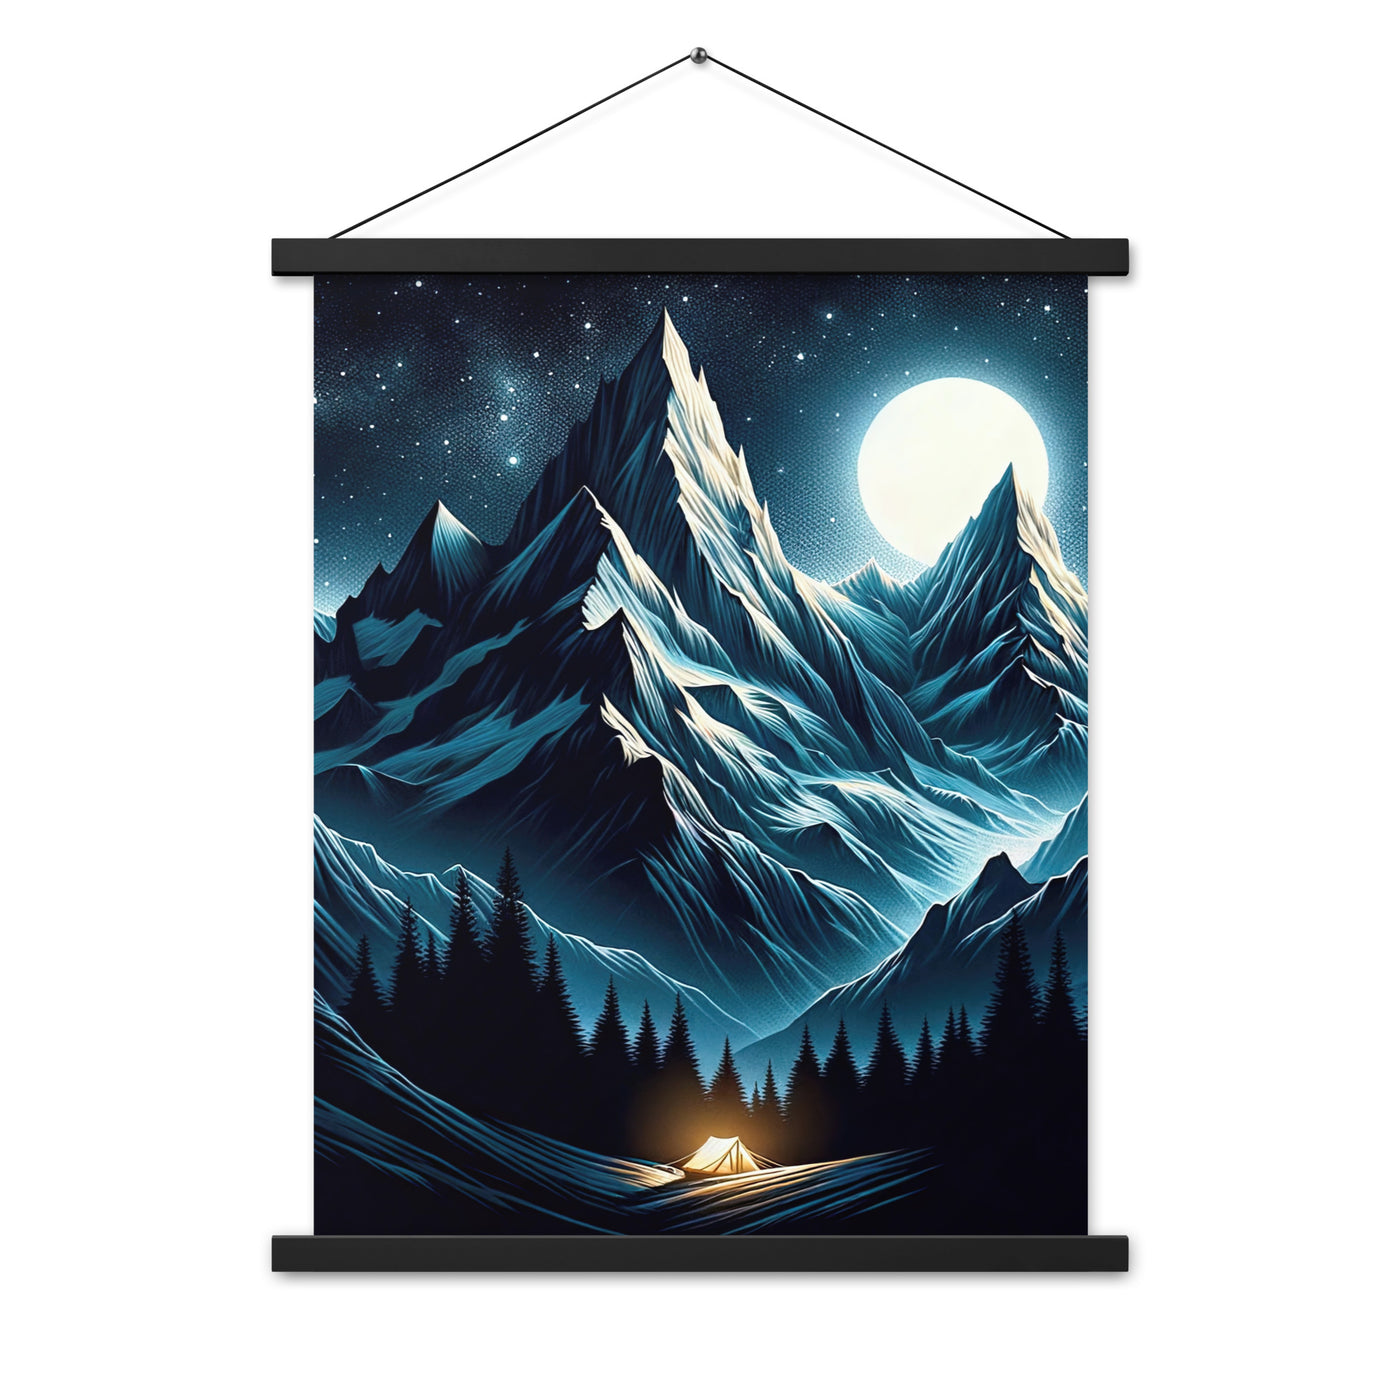 Alpennacht mit Zelt: Mondglanz auf Gipfeln und Tälern, sternenklarer Himmel - Premium Poster mit Aufhängung berge xxx yyy zzz 45.7 x 61 cm